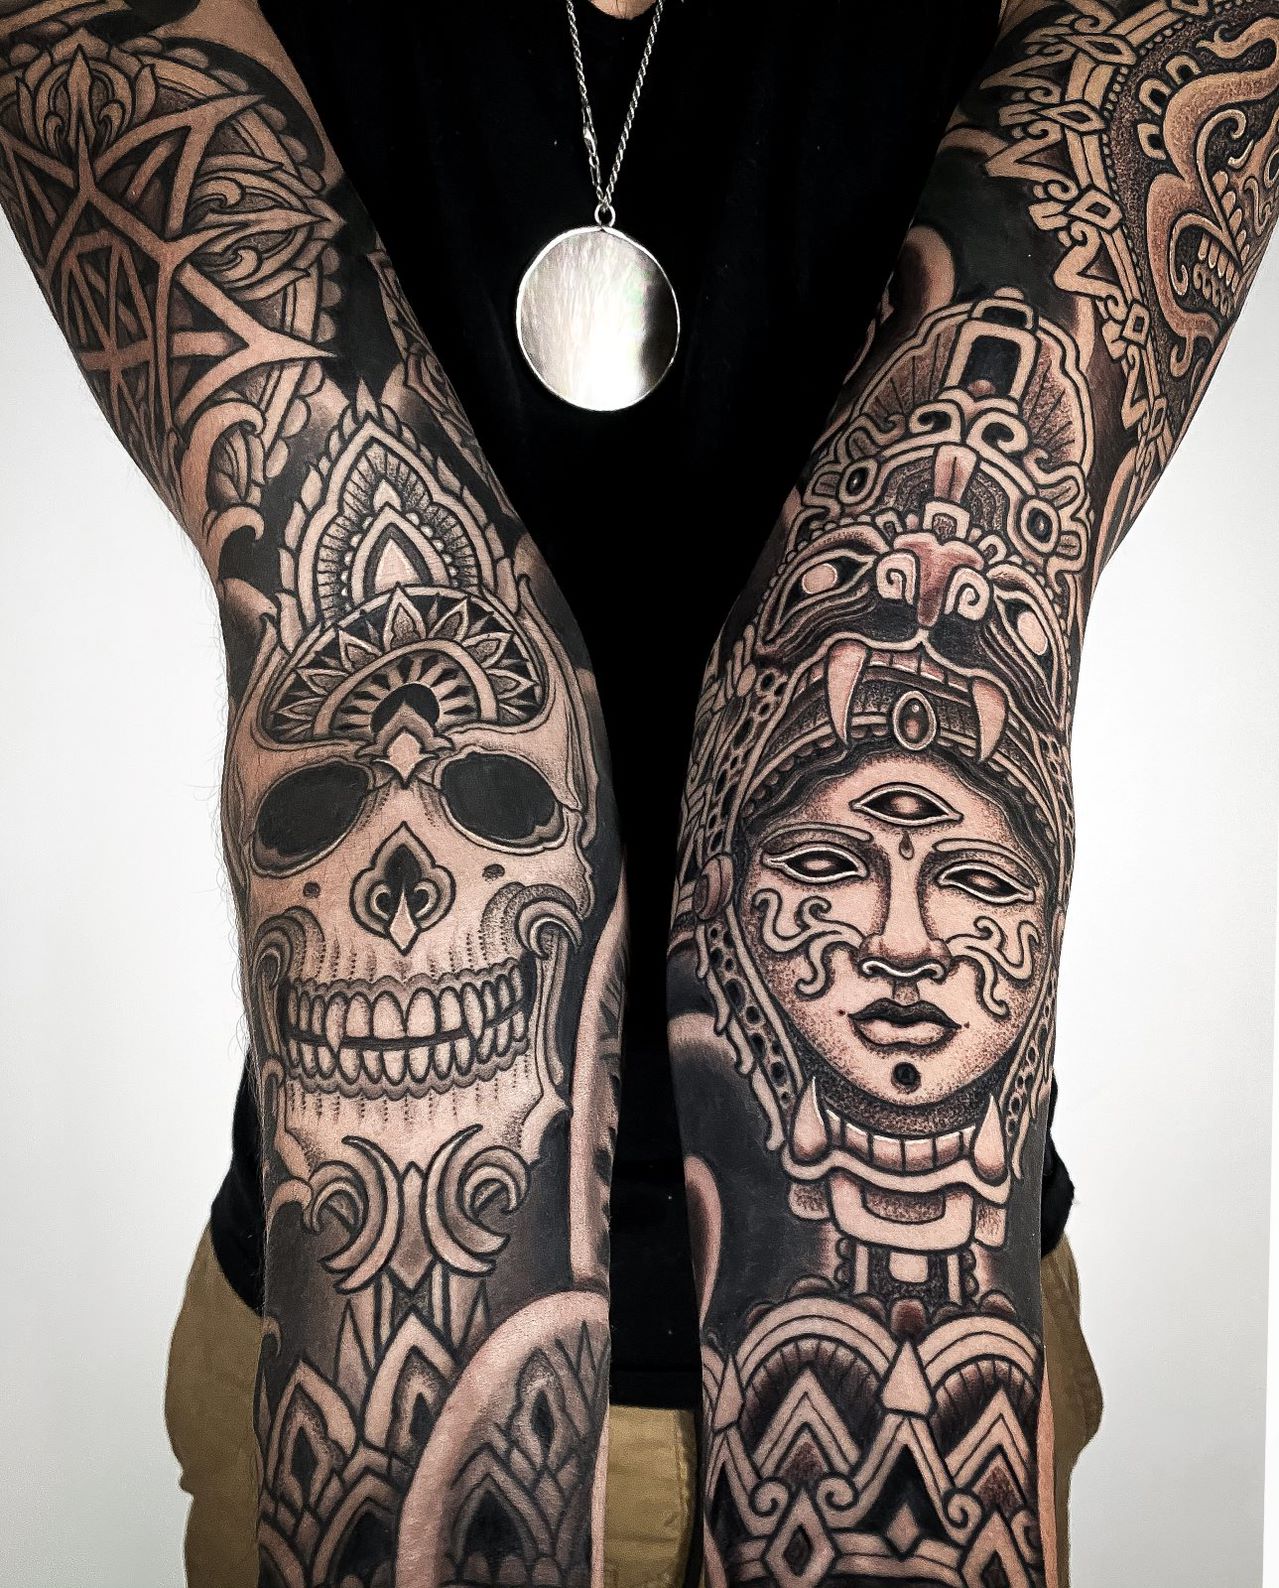 Bone shank | Sketch style tattoos, Flesh tattoo, Black art tattoo